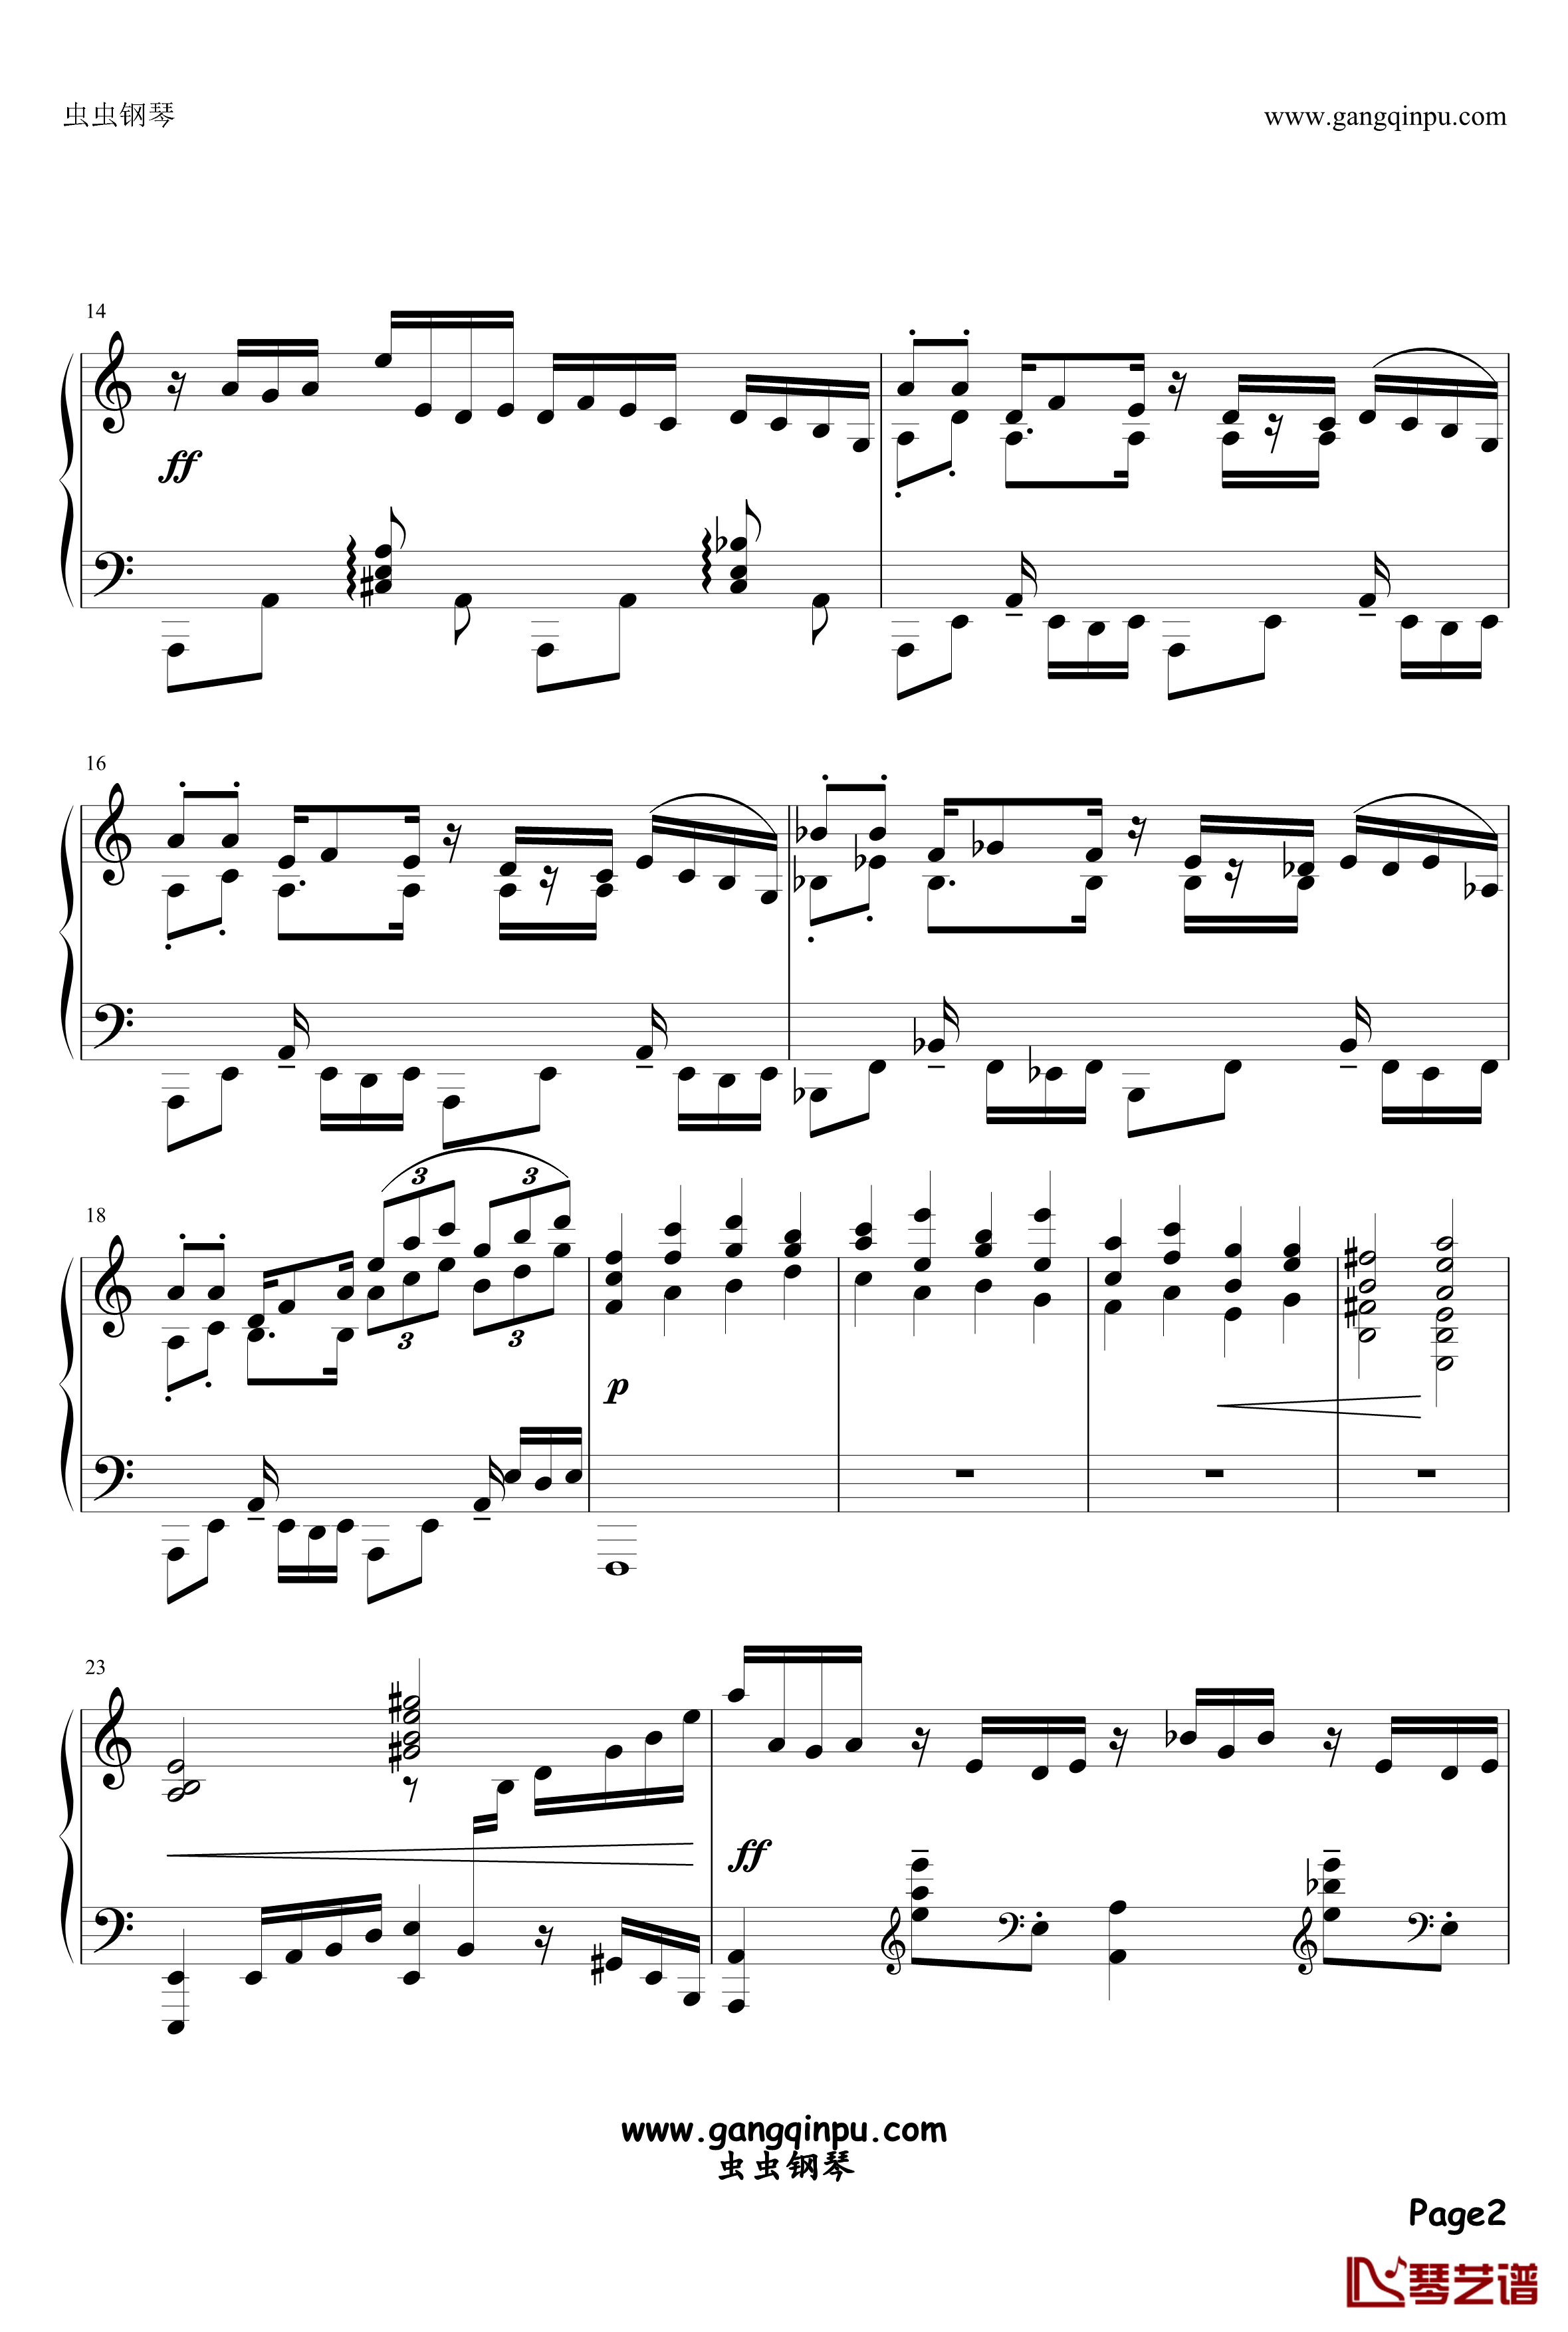 アストライアの双皿钢琴谱-ZODIACSYNDICATE2